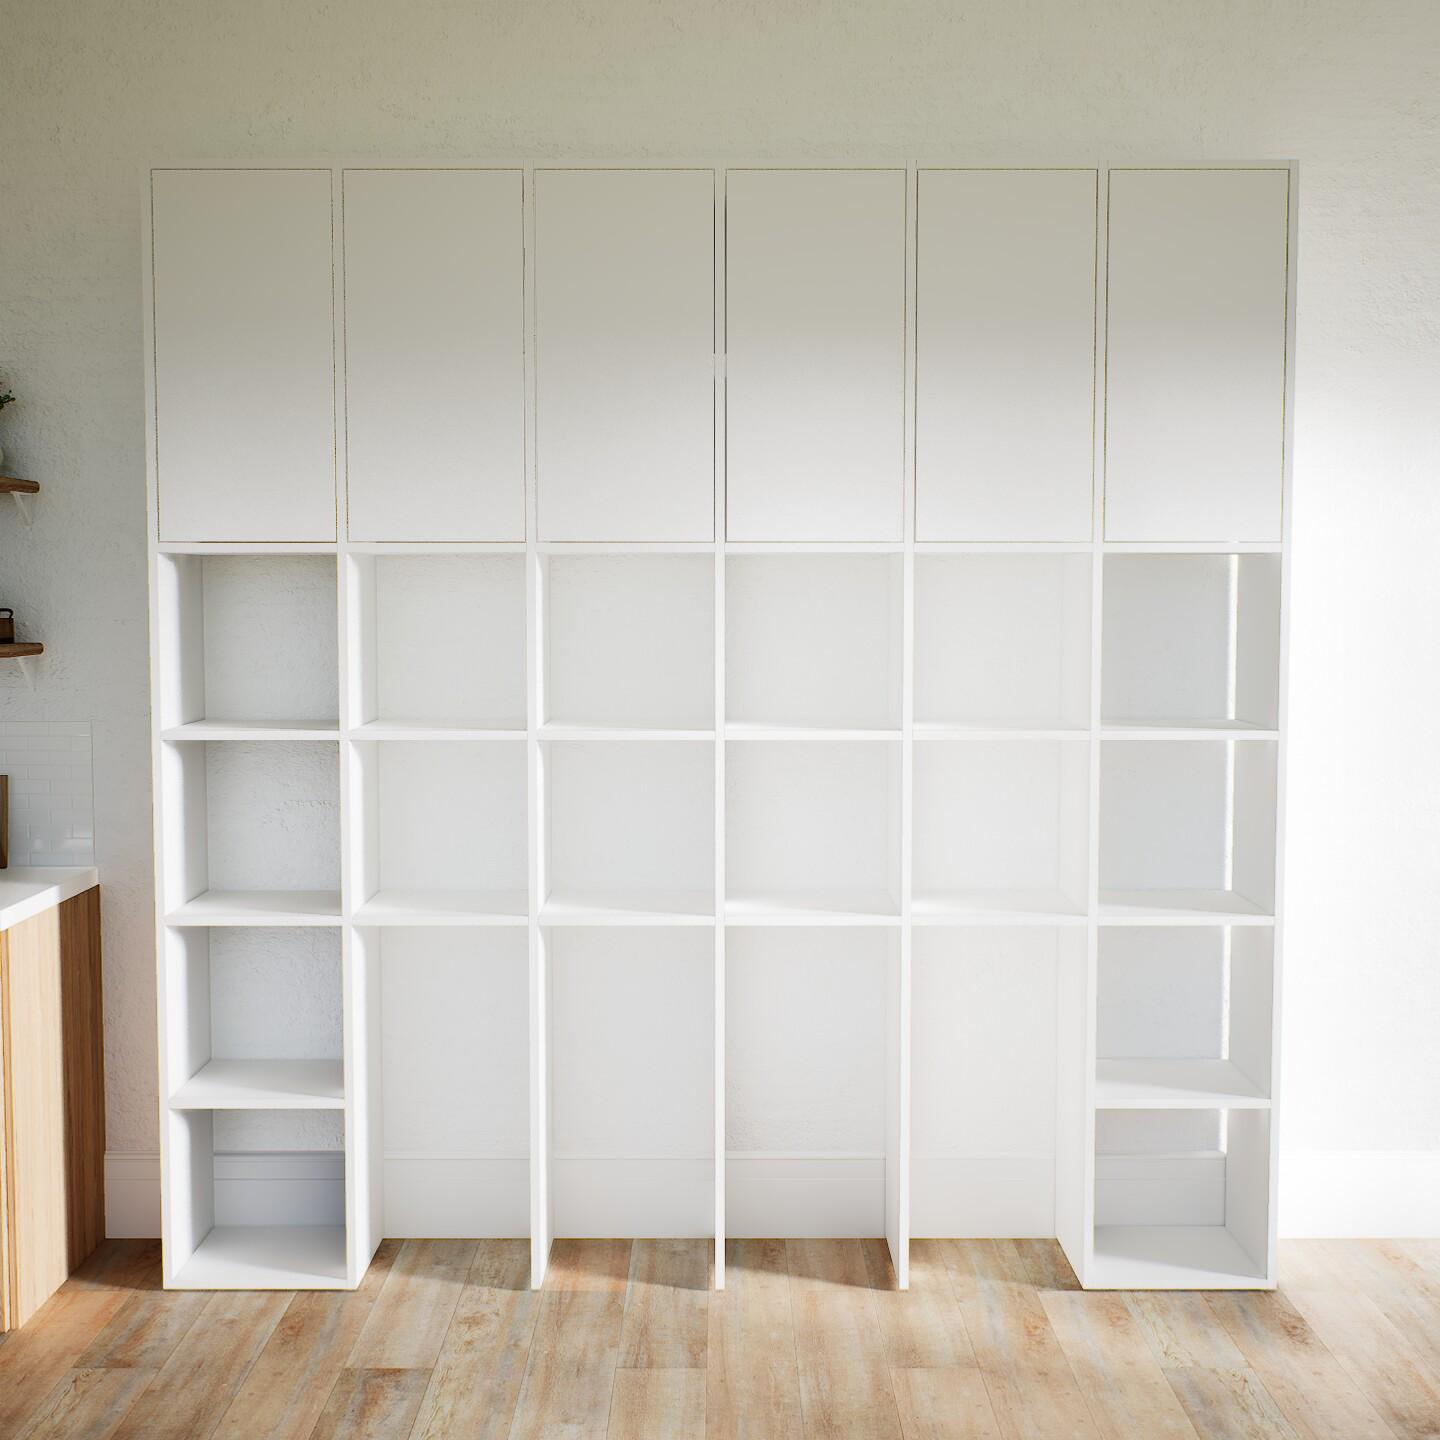 Wohnwand Weiß - Individuelle Designer-Regalwand: Türen in Weiß - Hochwertige Materialien - 233 x 233 x 34 cm, Konfigurator von MYCS